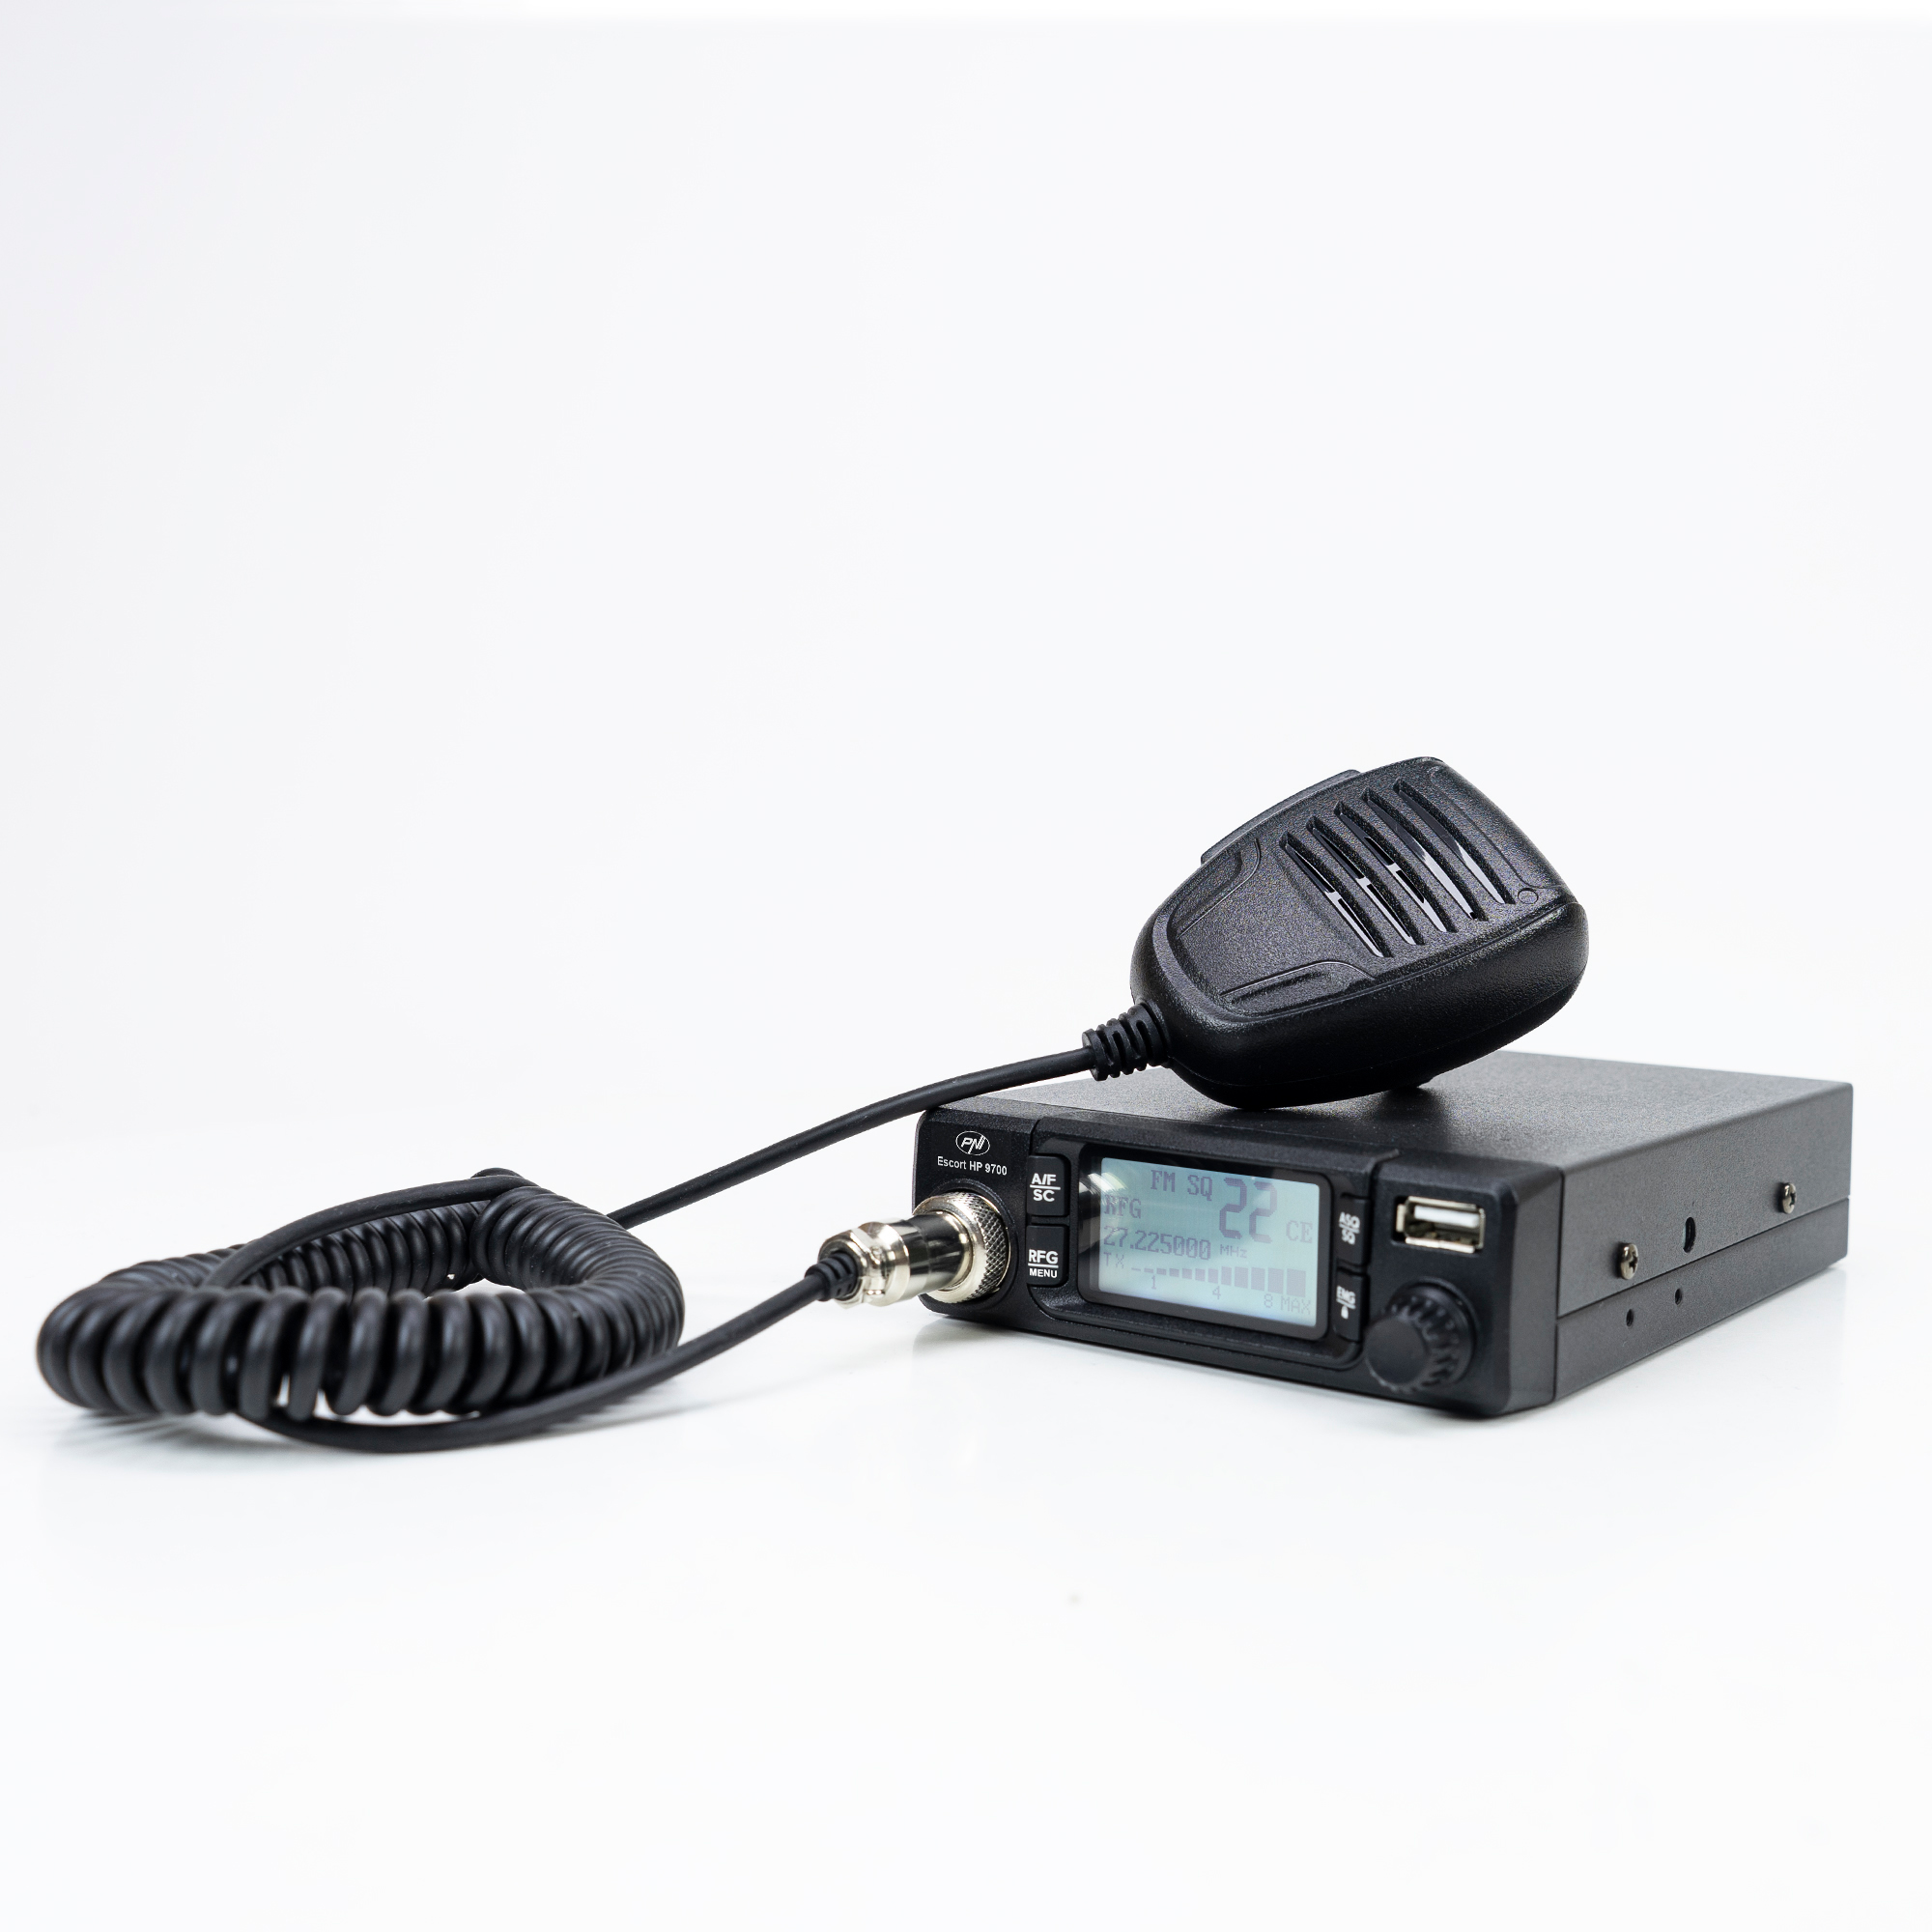 CB-Radiosender HP 9700 mit ANC-Funktion und 5V 1,7A  - Bild 1